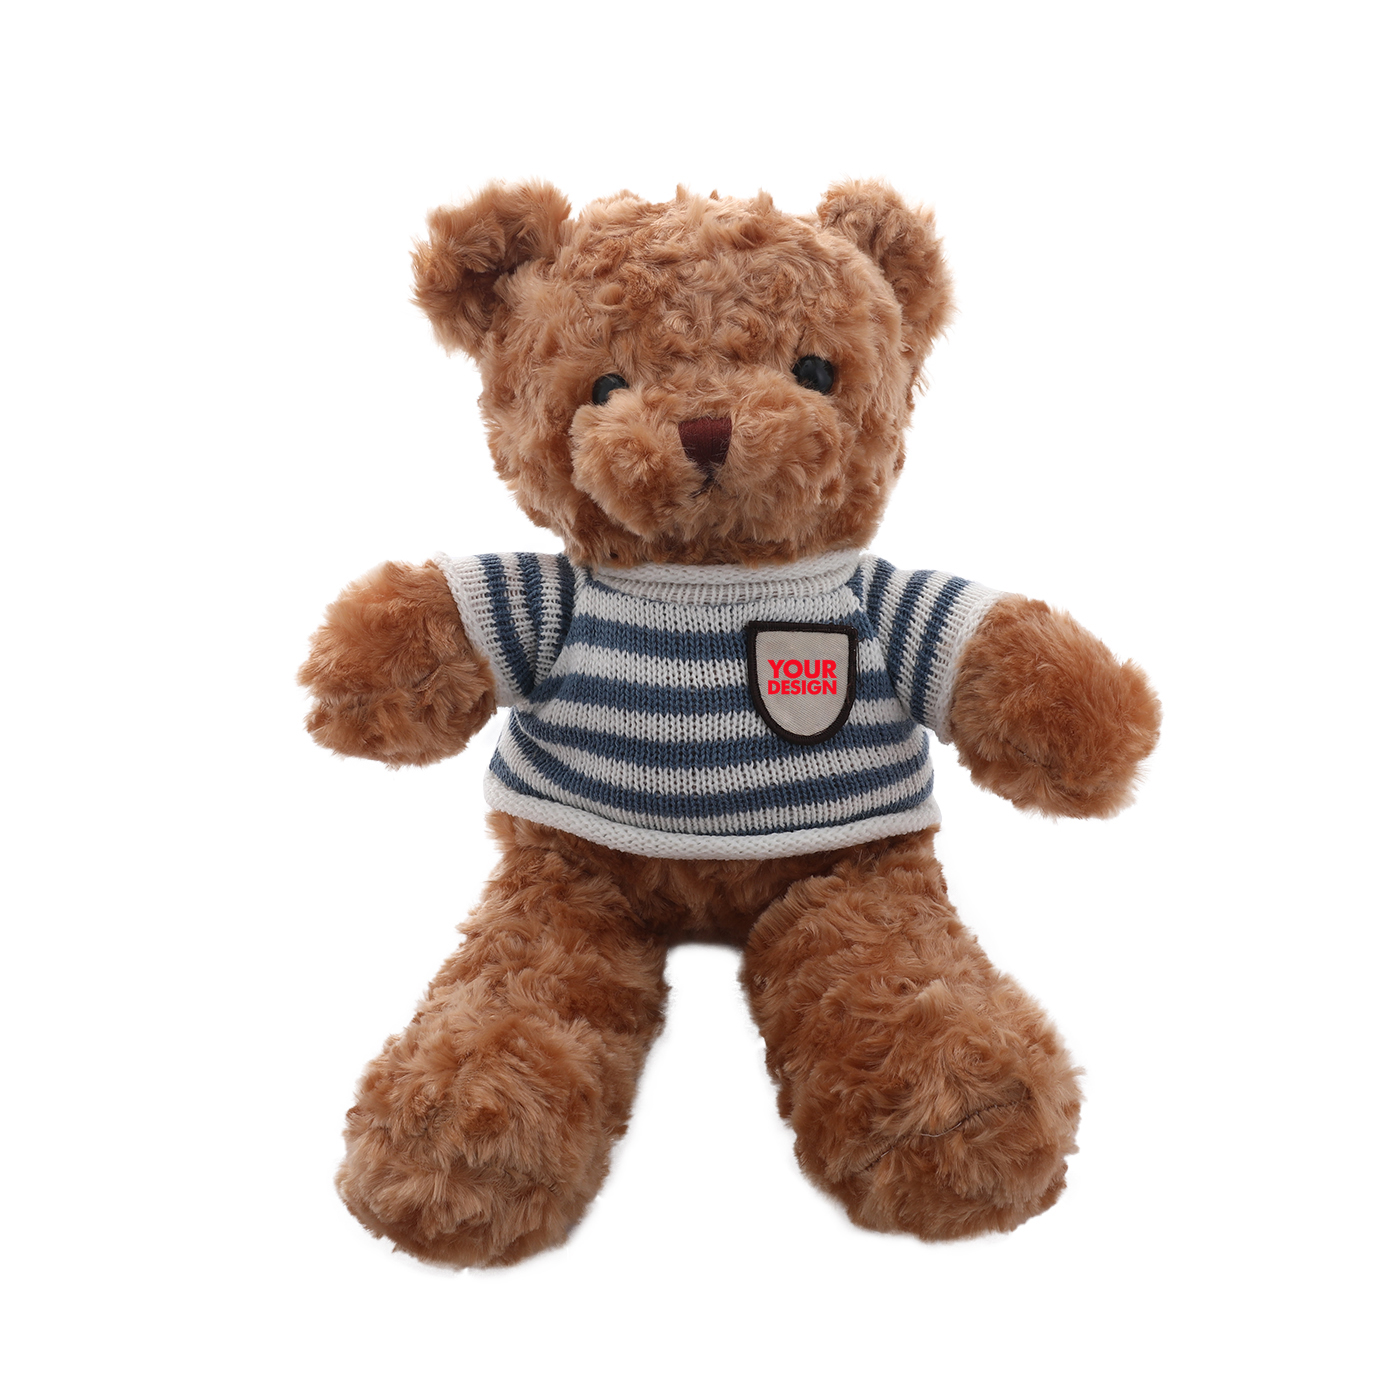 Small Teddy Bear Plush Toy1